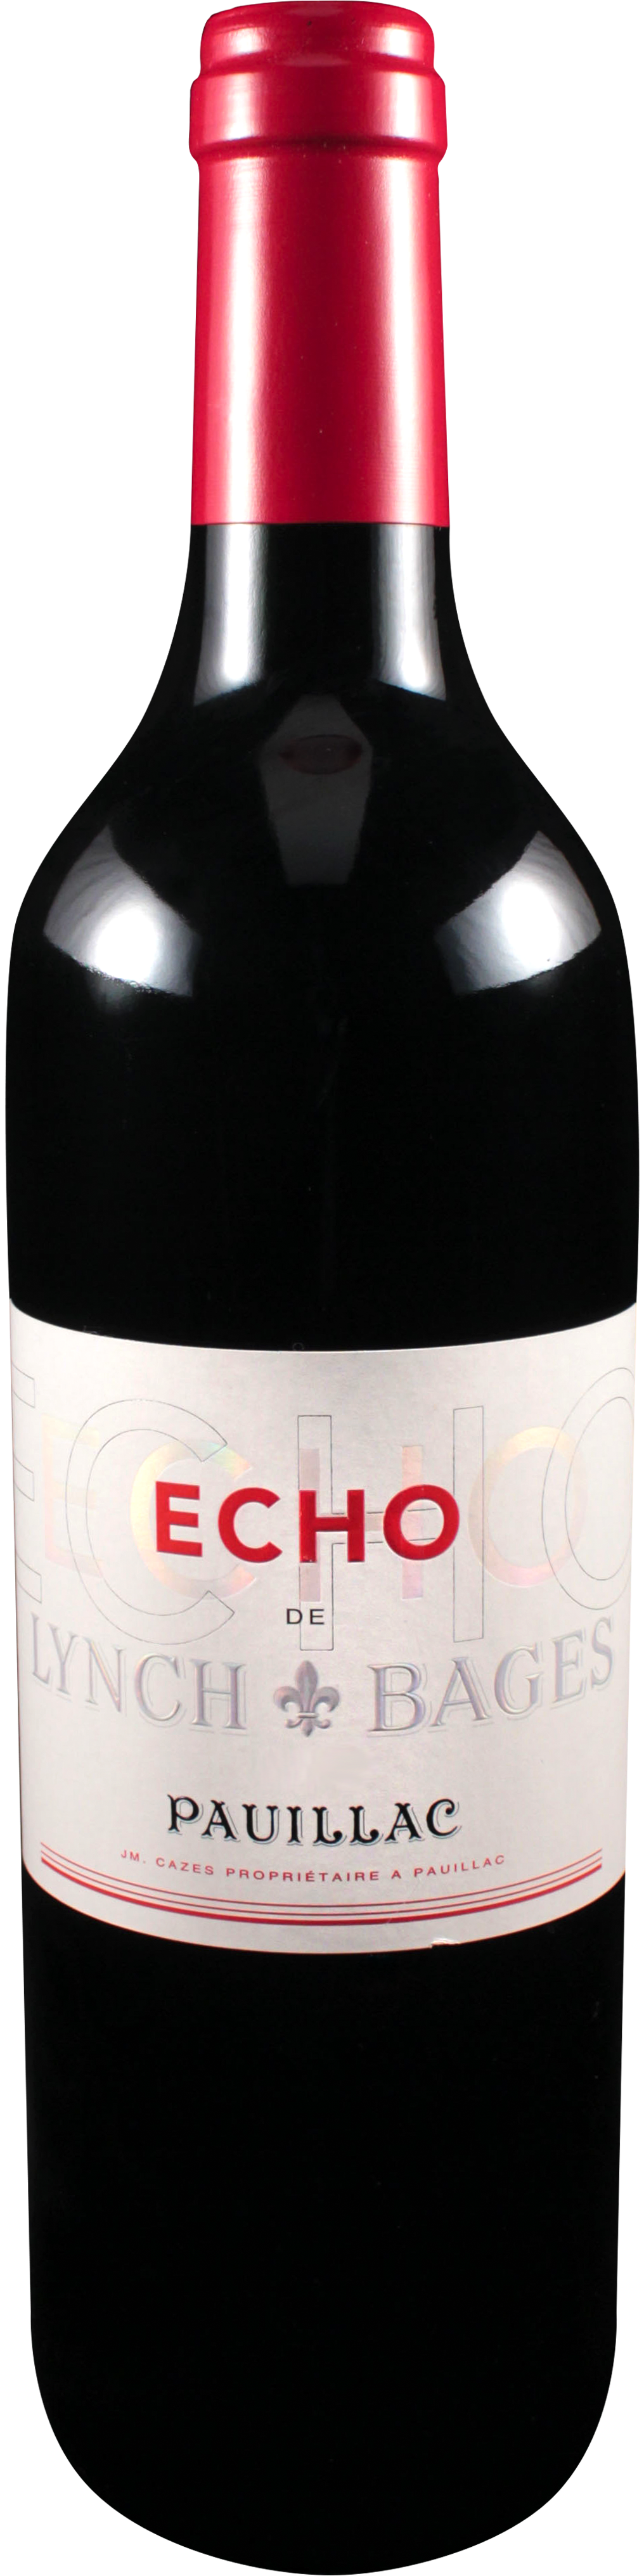 Bottle shot of 2011 Echo de Lynch Bages, 5ème Cru Pauillac